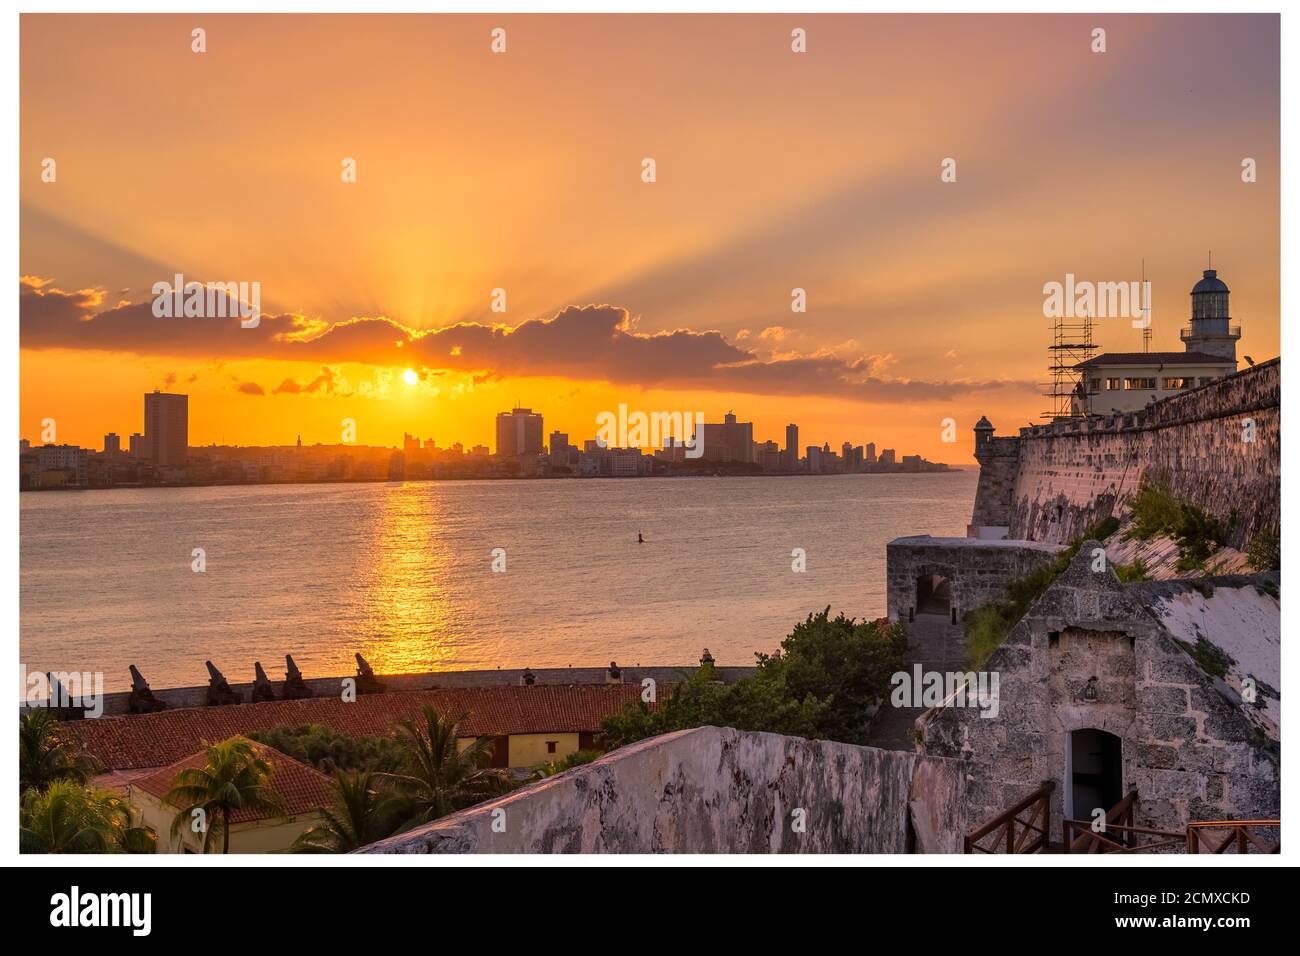 Wunderschöner Sonnenuntergang in Havanna mit Blick auf die Skyline der Stadt, den Leuchtturm El Morro und den Sonnenuntergang über den Gebäuden - von der anderen Seite der Bucht aus gesehen Stockfoto